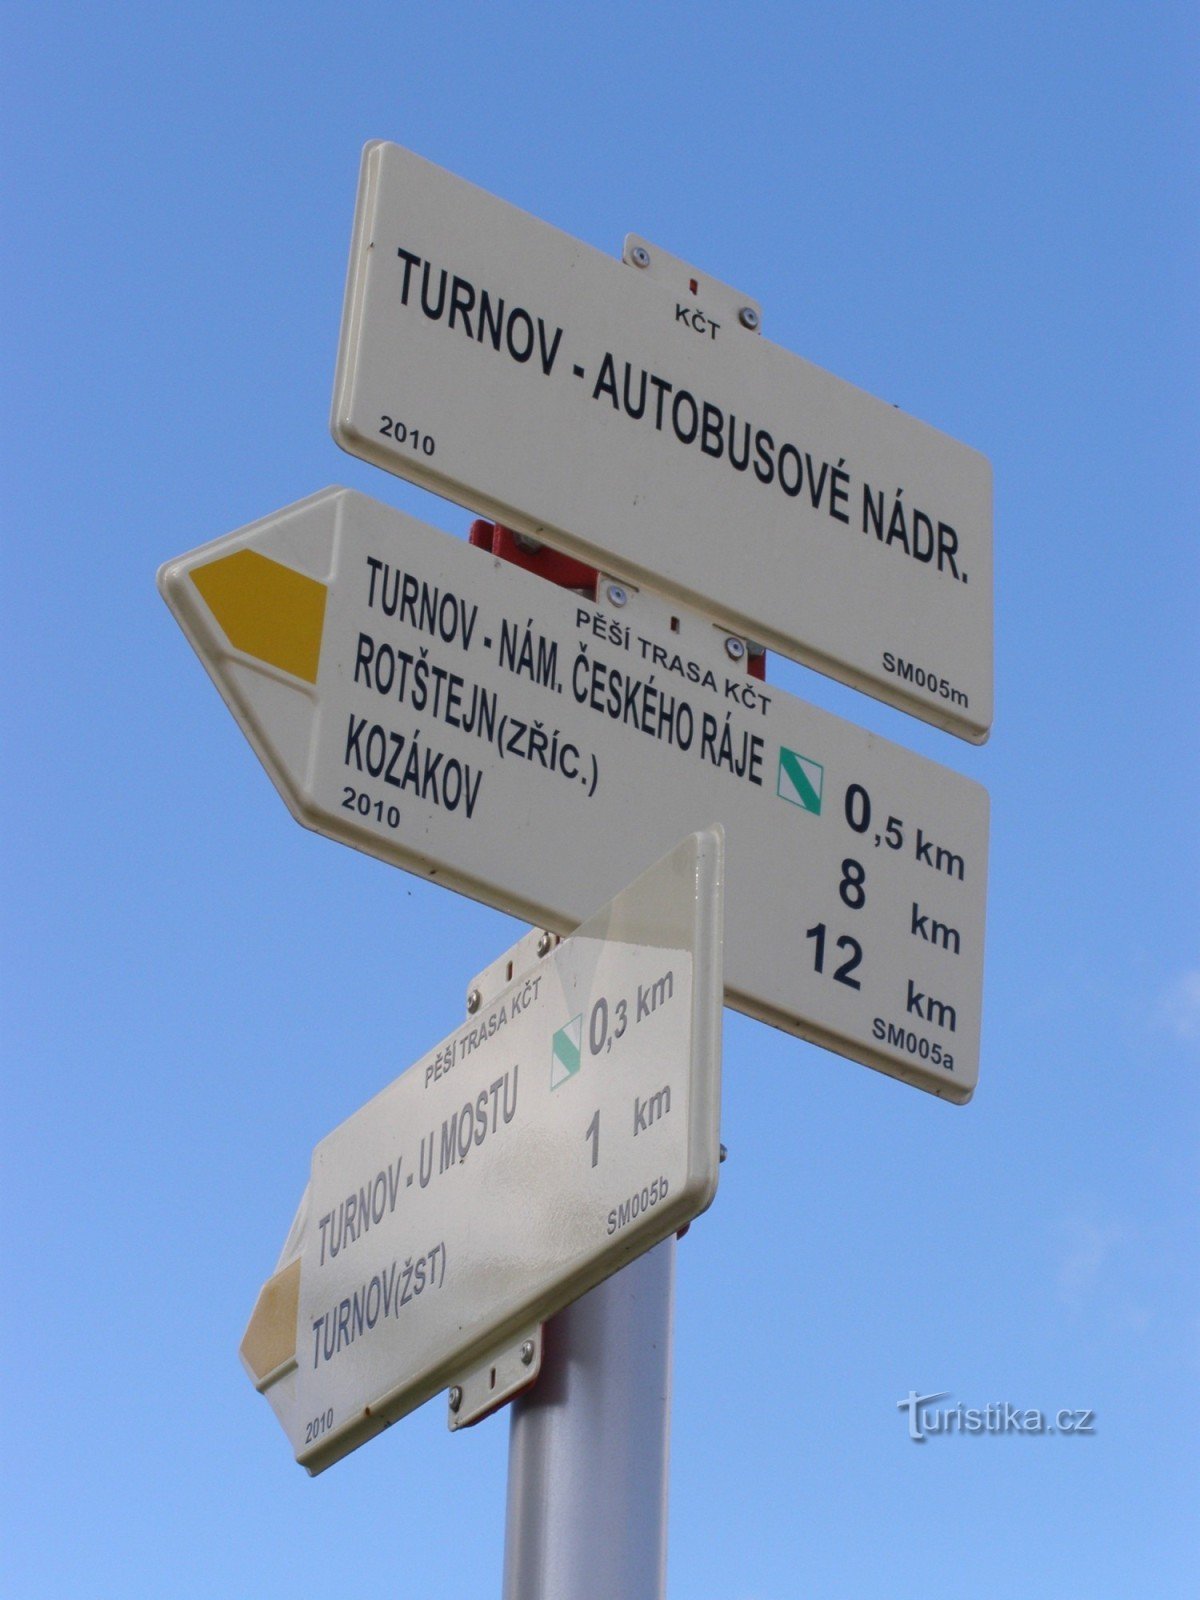 туристический перекресток Турнов - автовокзал